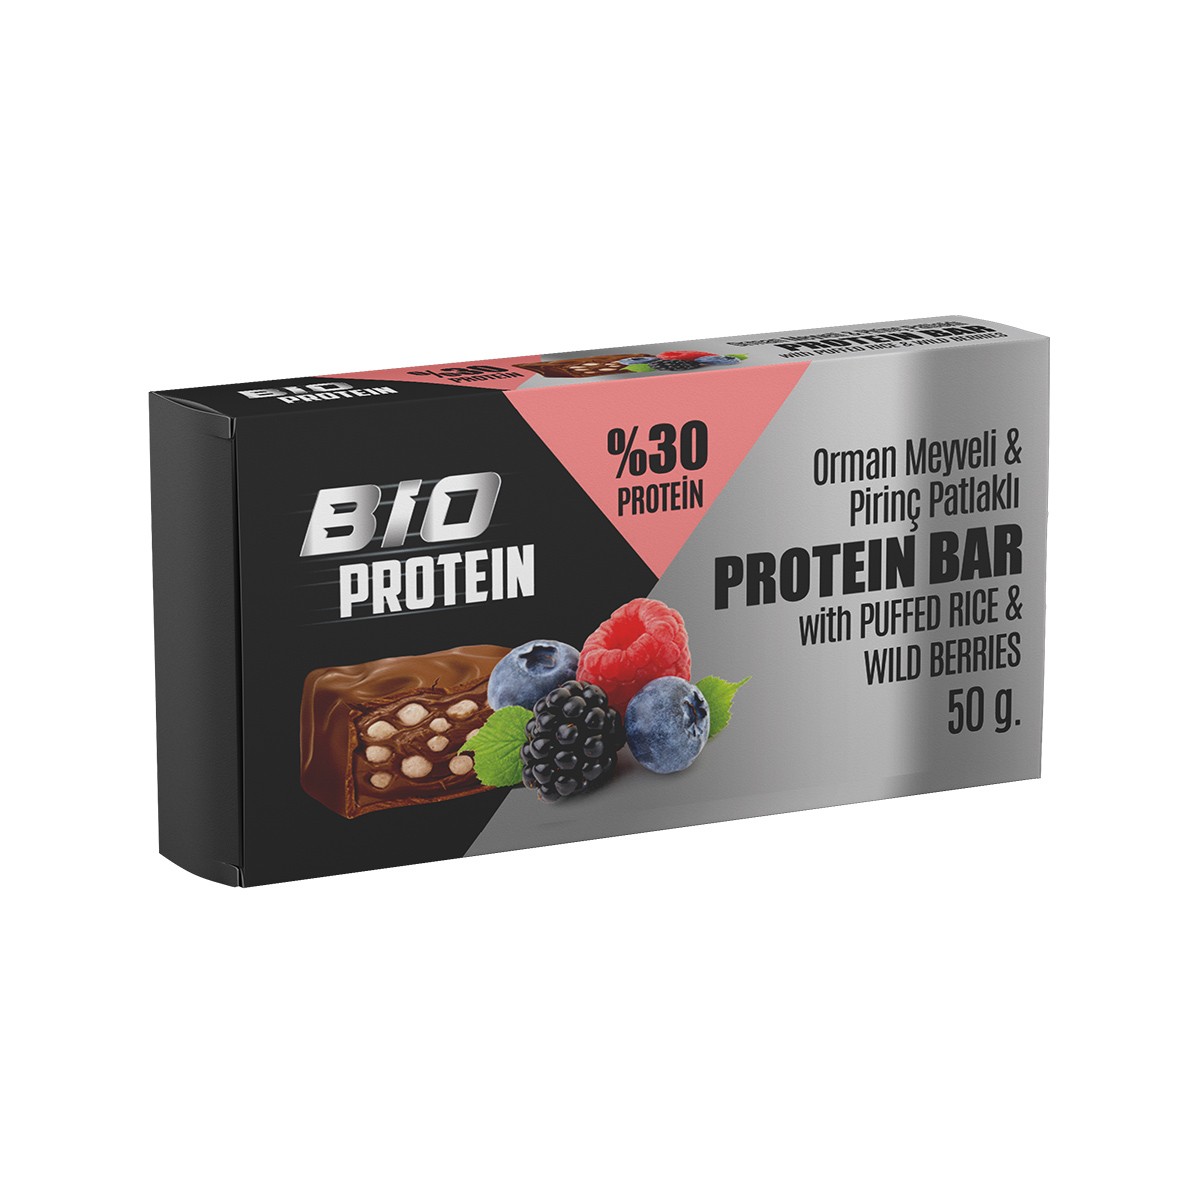 Bio Protein Pirinç Patlaklı Protein Bar - Orman Meyveli